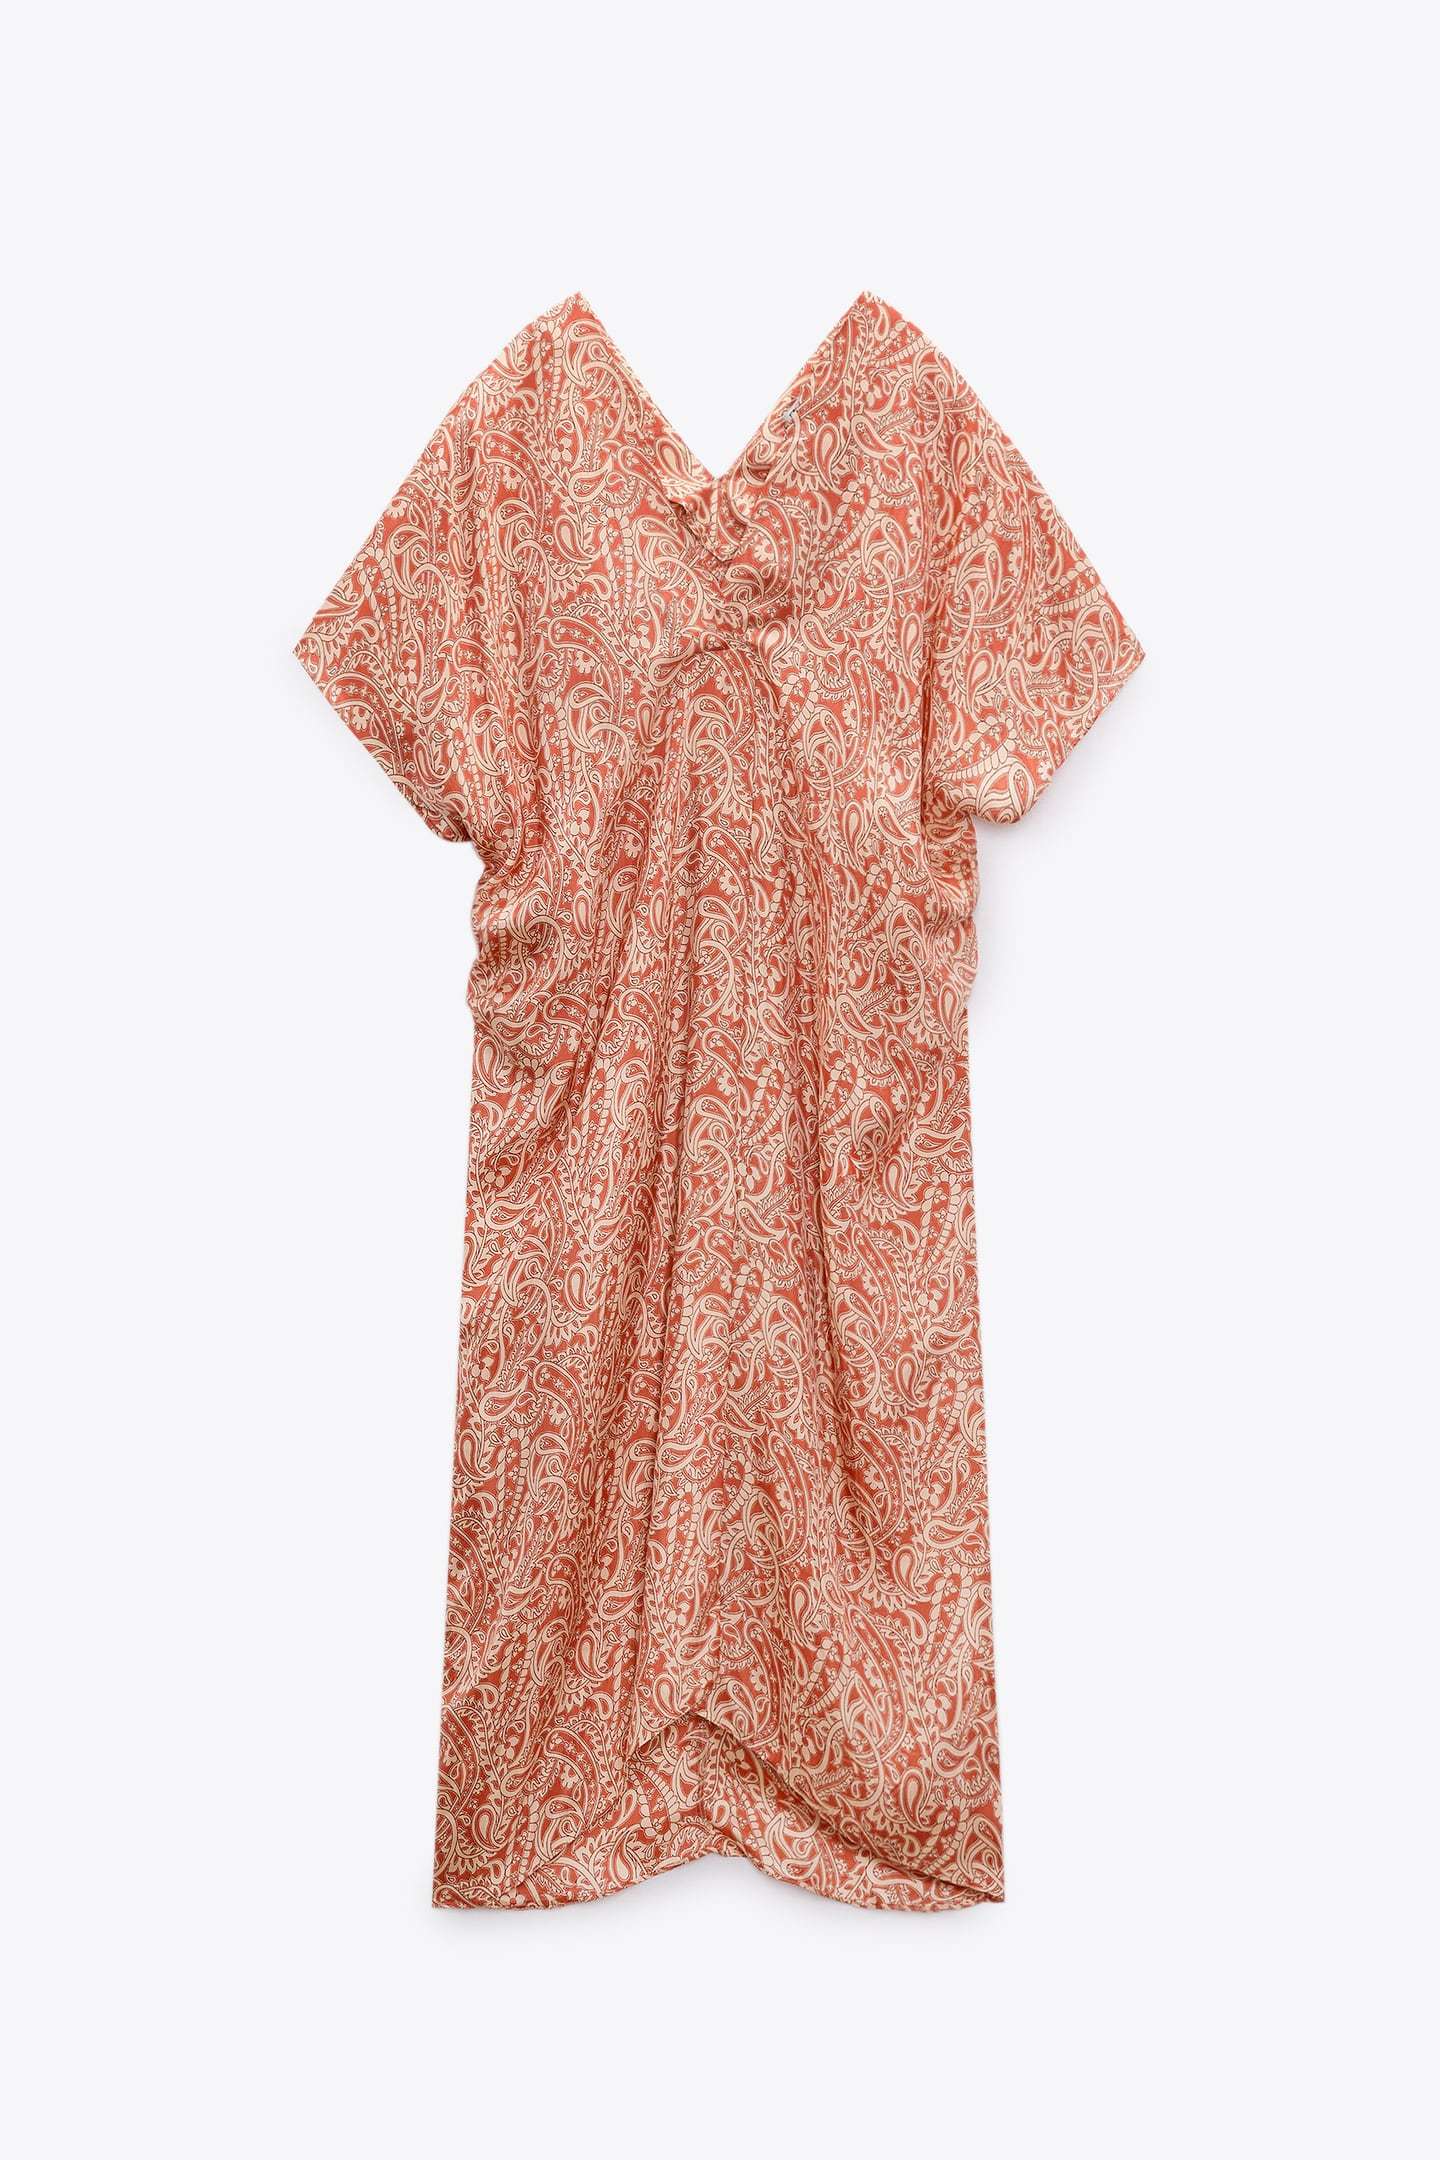 ALT: Estos son los 10 vestidos midi de Zara ms elegantes de las rebajas de enero 2023